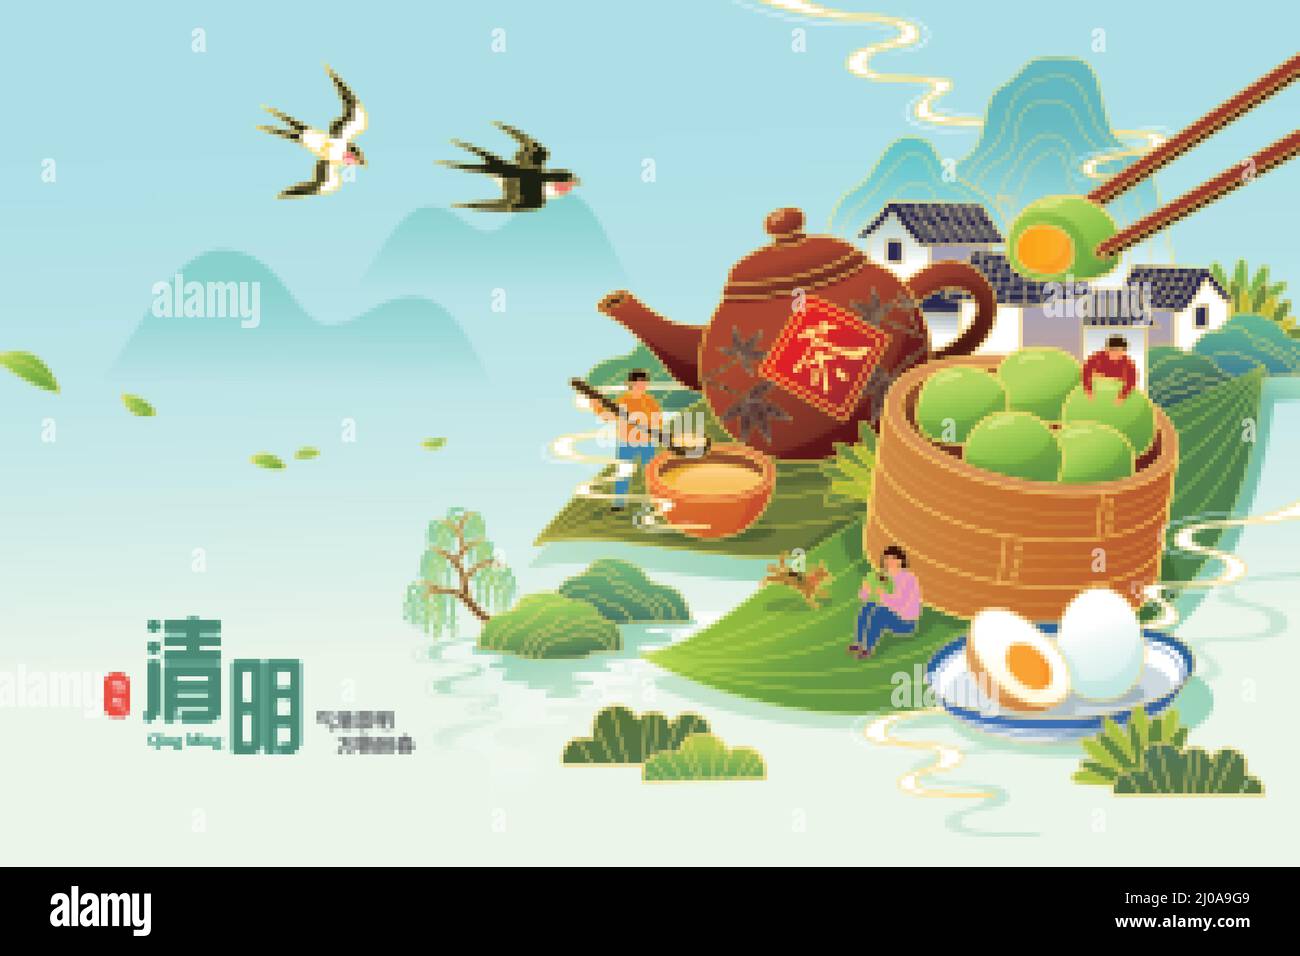 Gli asiatici mangiano cibi freddi come le palle di riso verde, uova bollite durante il Qing Ming Festival. Traduzione: Festival di Qingming. La chiarezza e la luminosità Illustrazione Vettoriale